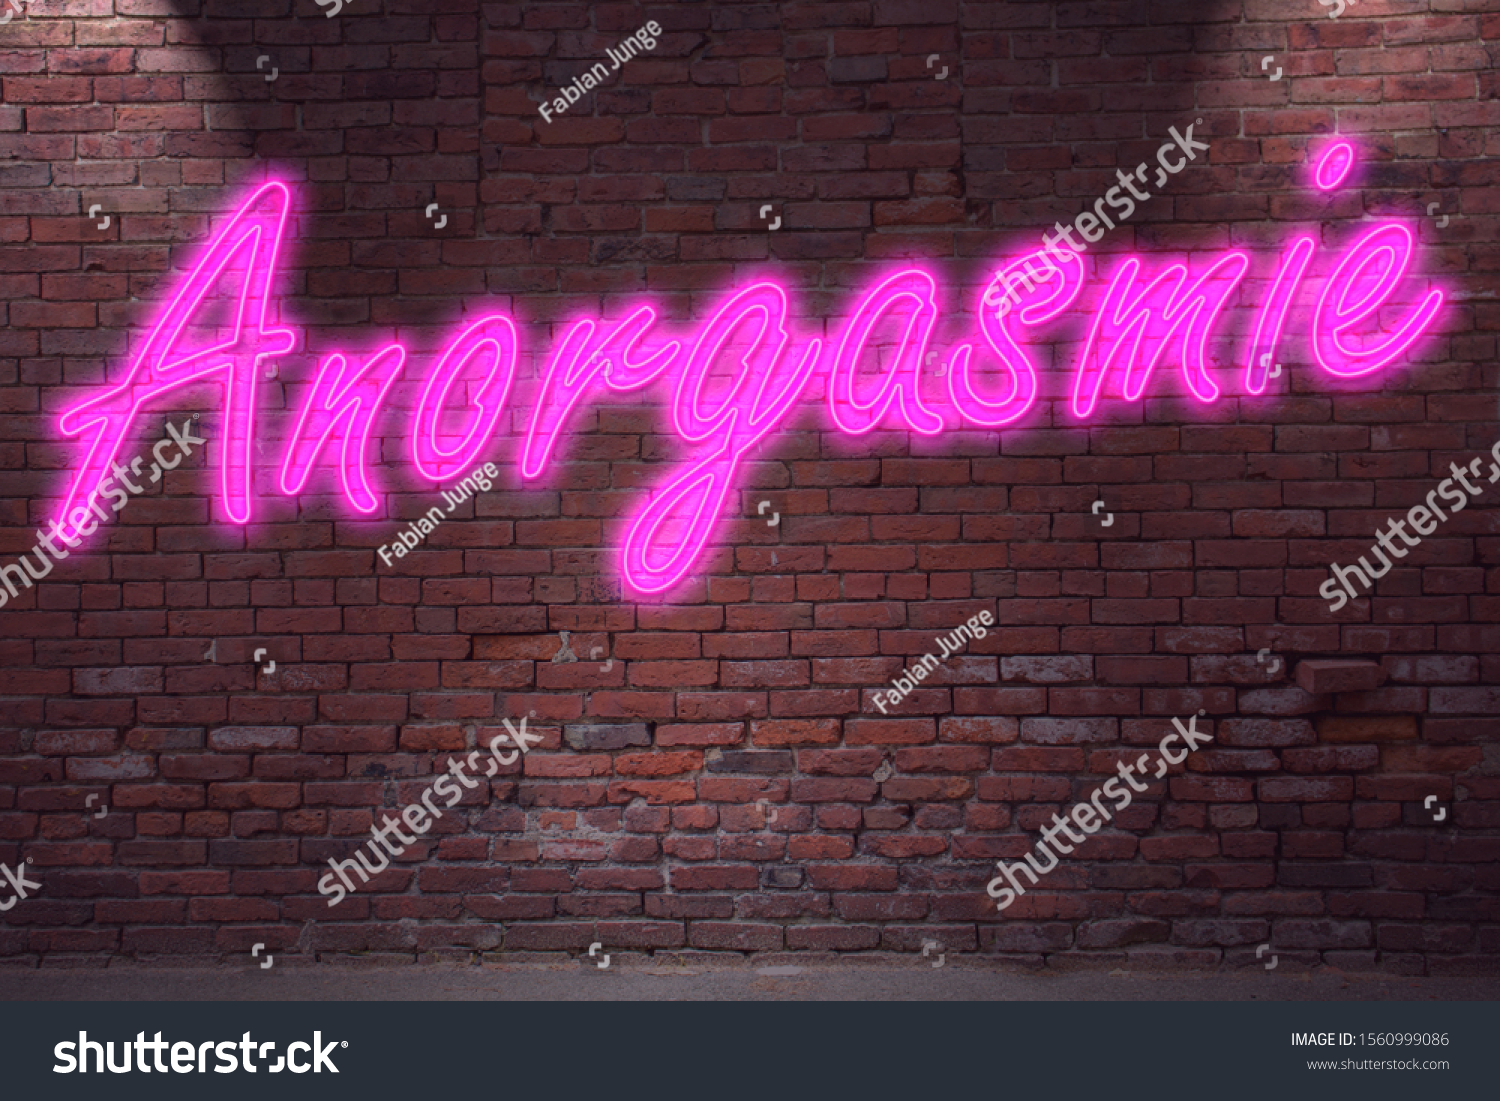 Anorgasmic